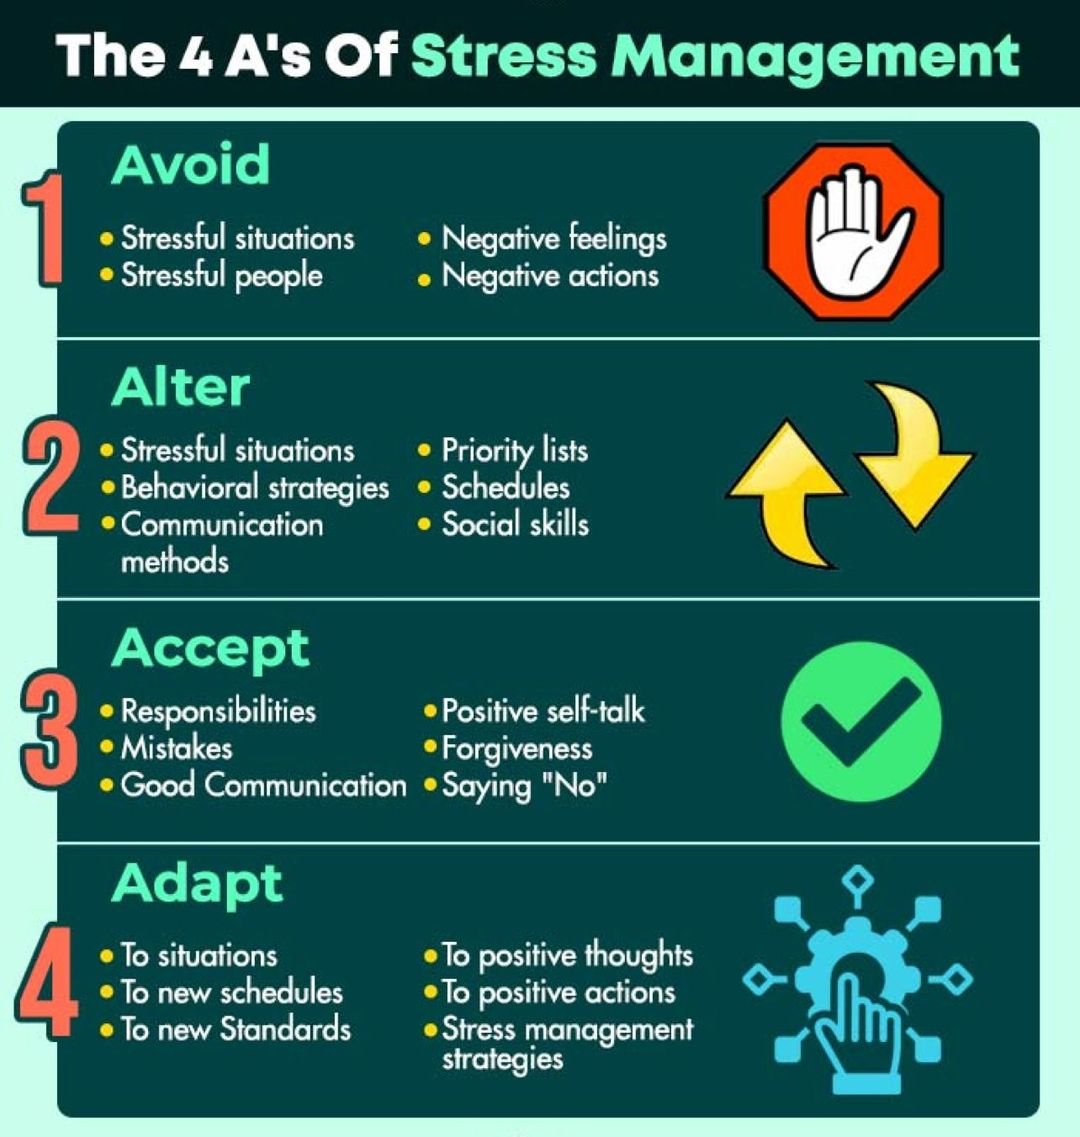 A's of Stress managemen